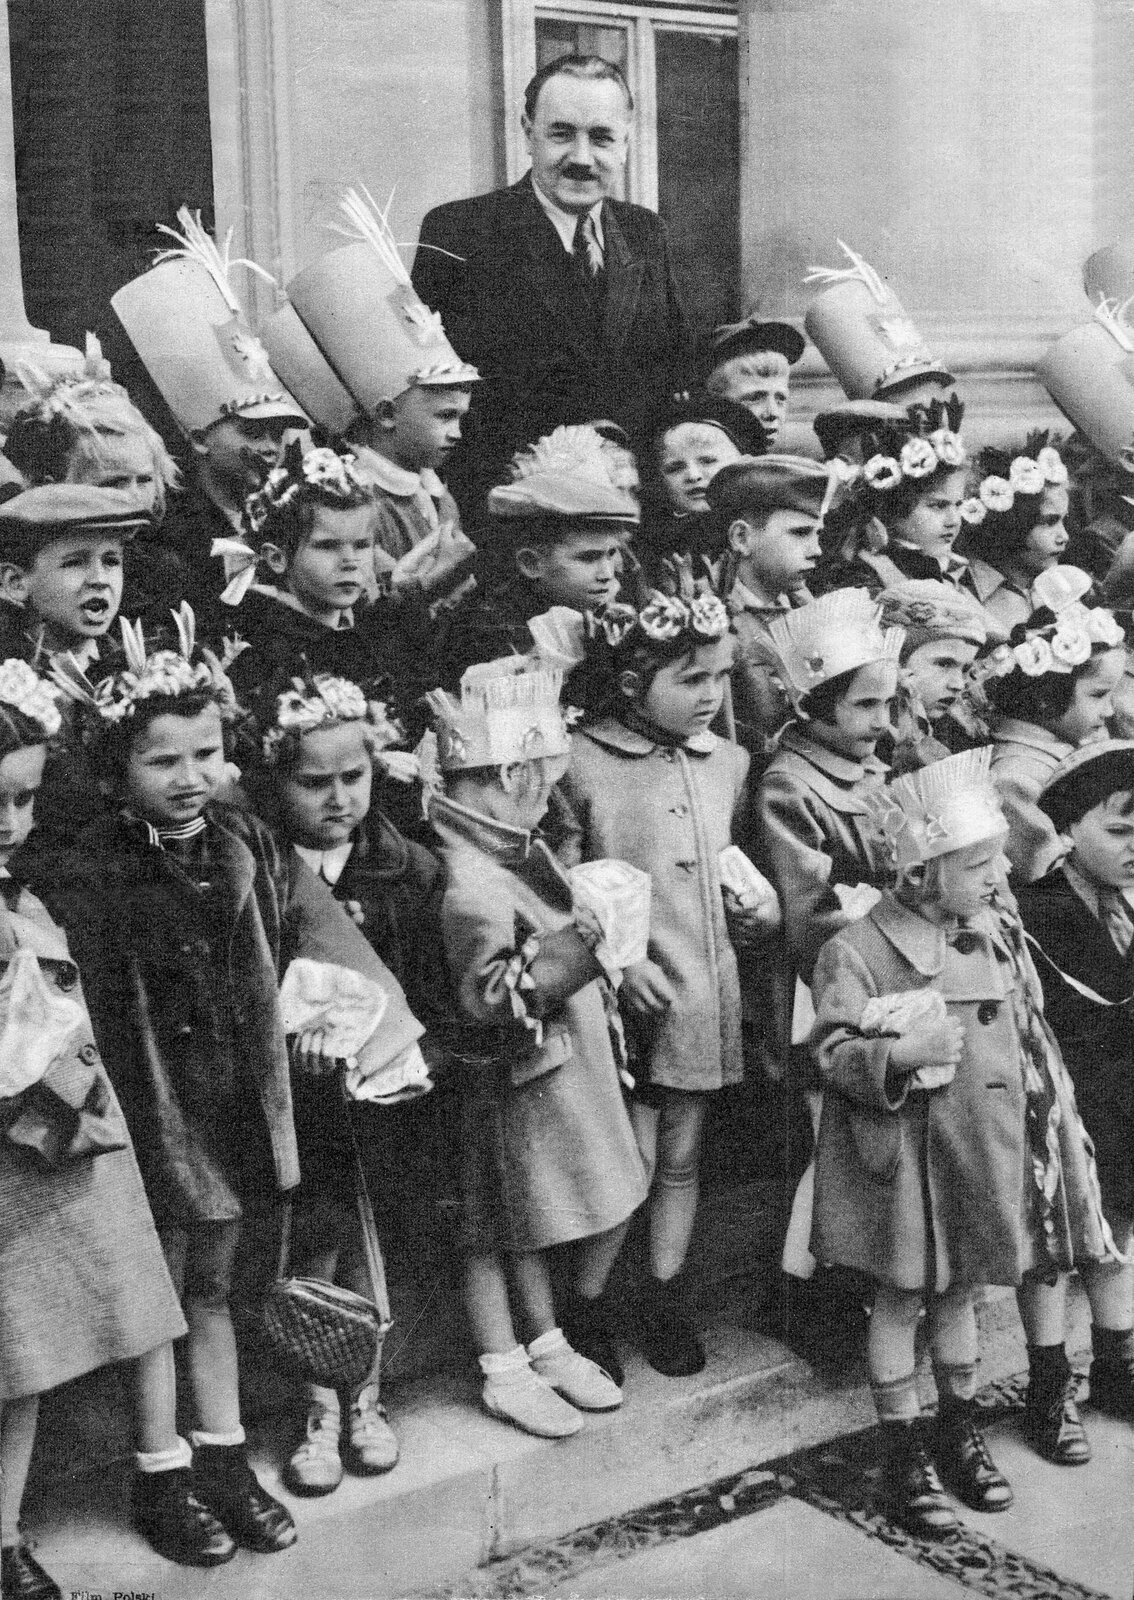 Mężczyzna ubrany w garnitur stoi w ostatnim szeregu z dziećmi. Stoją na schodach, w tle znajduje się ściana budynku i okno. Dziewczynki na głowach mają wianki. Chłopcy noszą czapki z kartonu imitujące wojskowe nakrycia głowy.